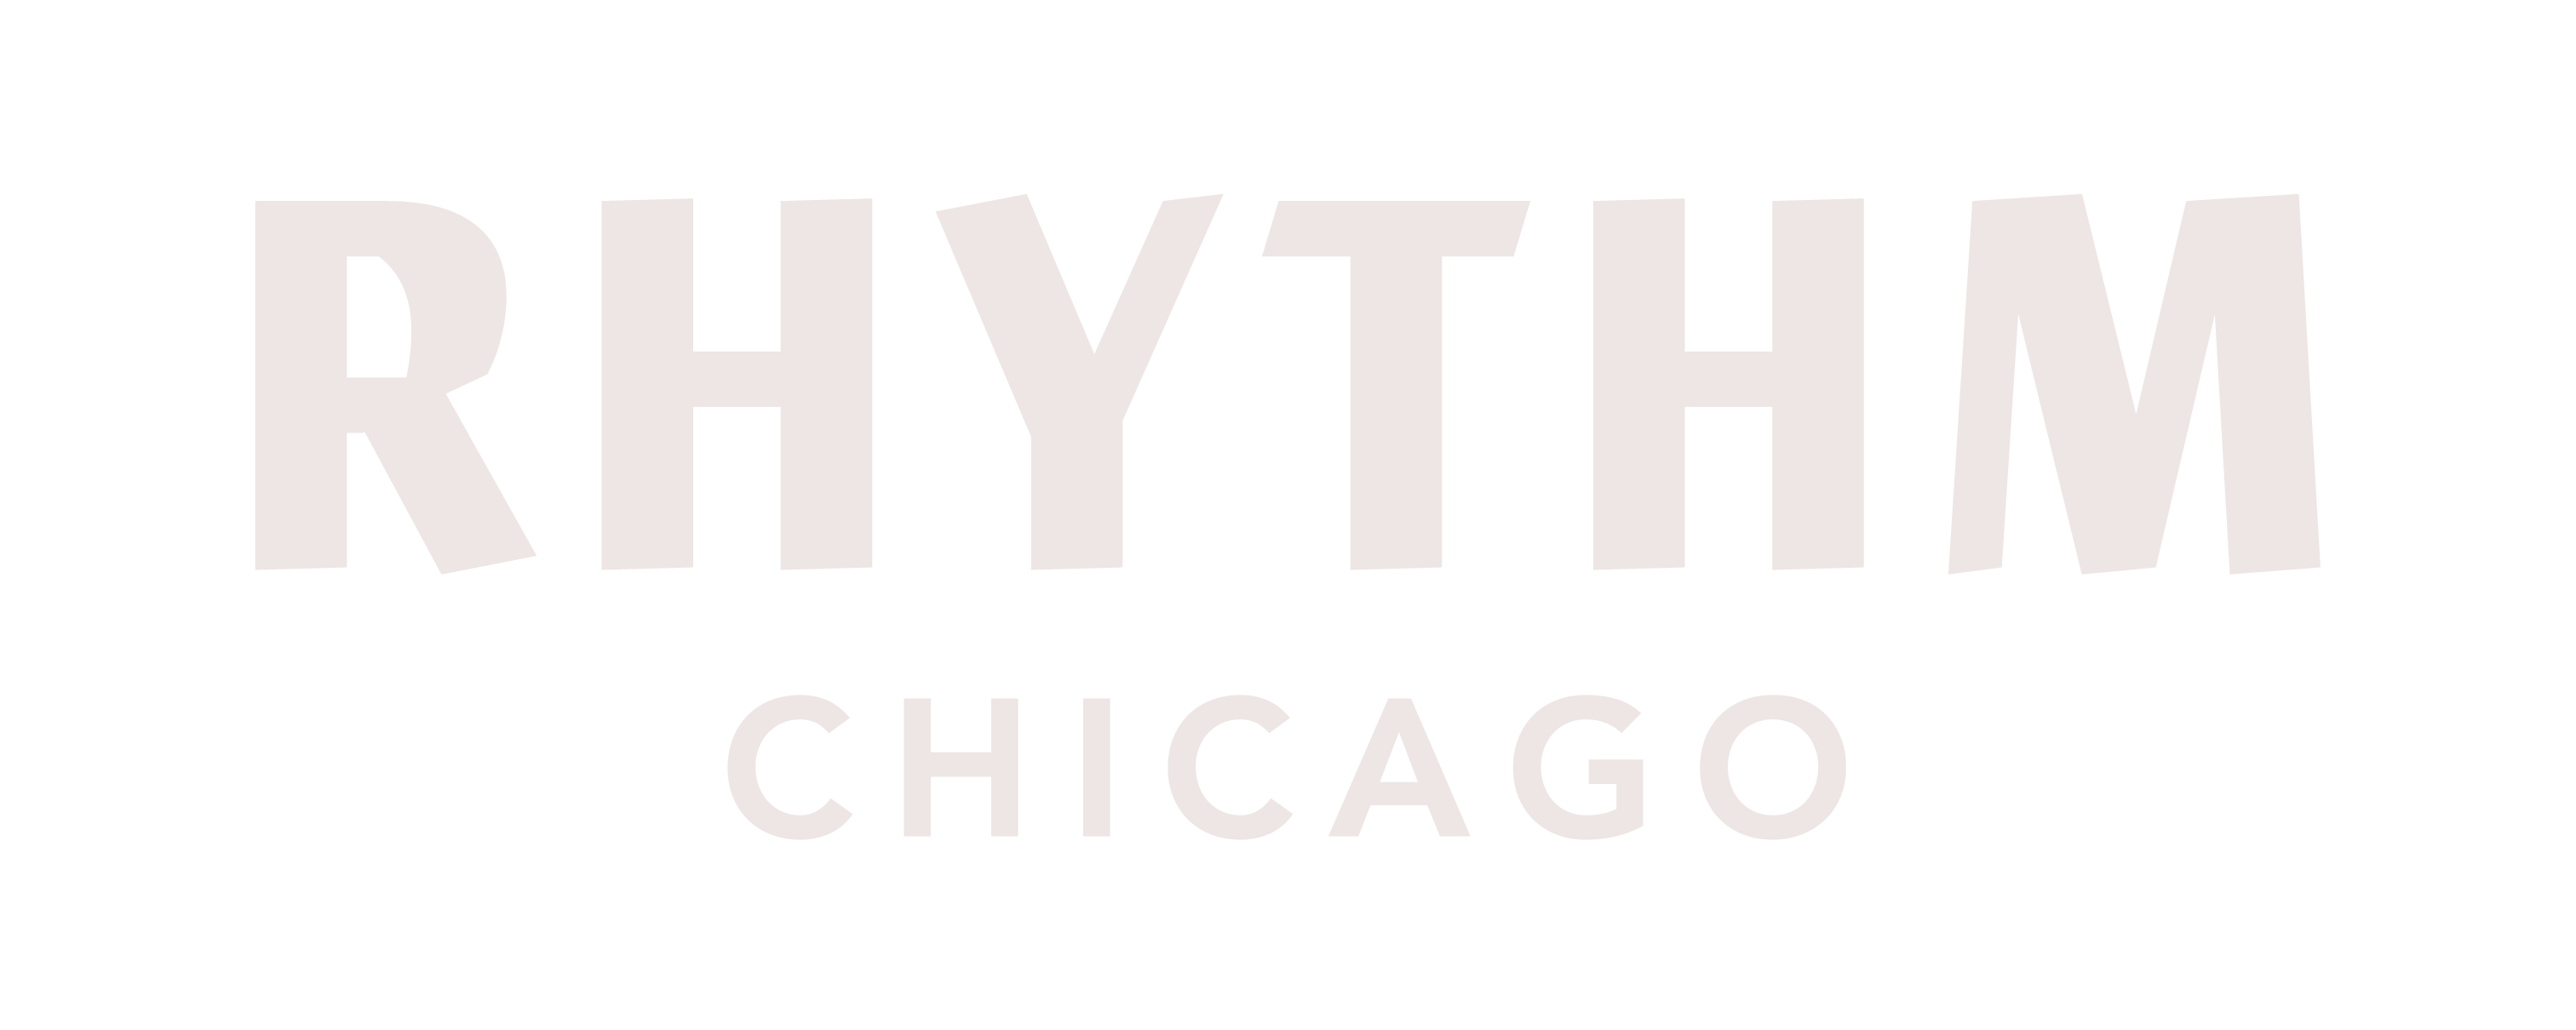 Rhythm Chicago